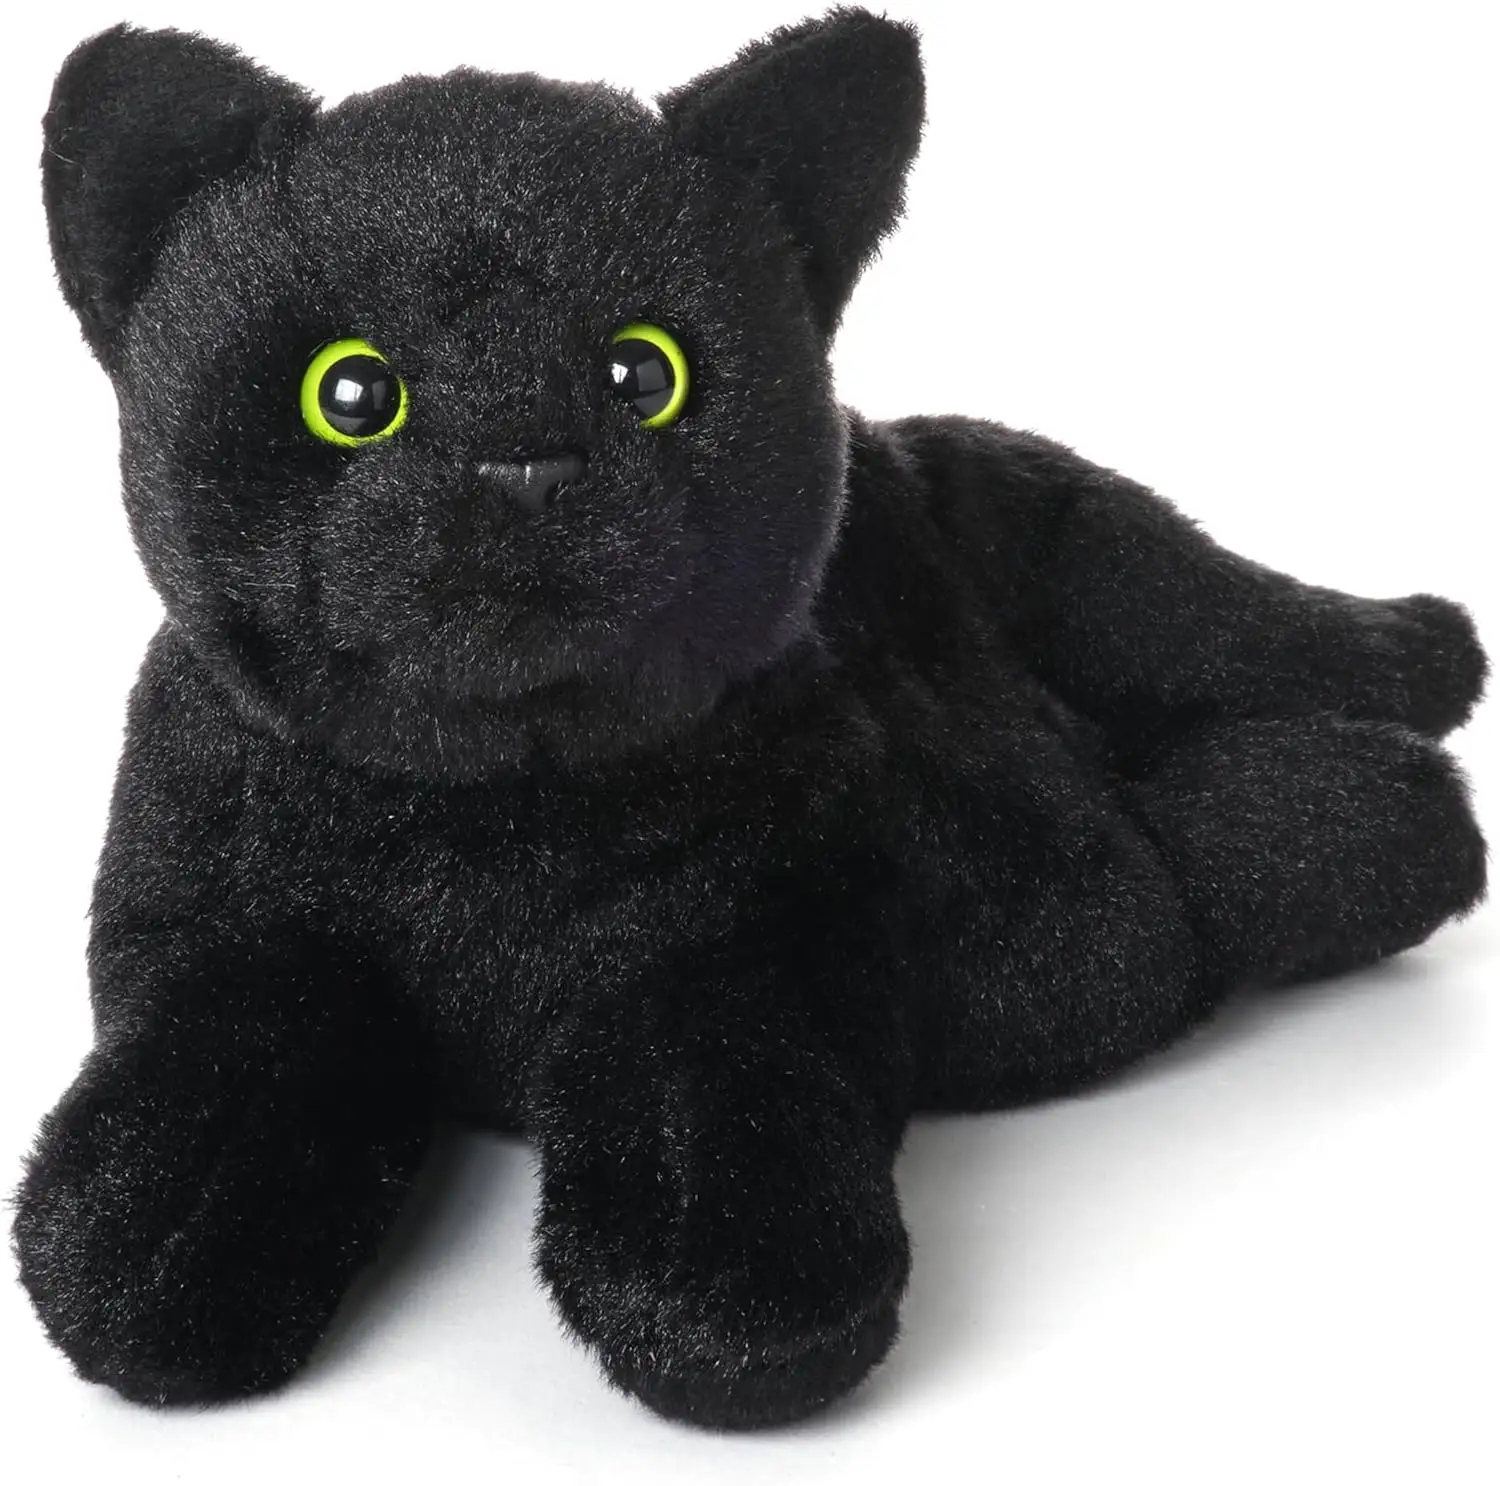 Stofftiere realistische schwarze Katze Plüsch-Spielzeug weiches Kätzchen Stofftiere schwarze Katze Plüschie für Heimdekoration Tiersammlung